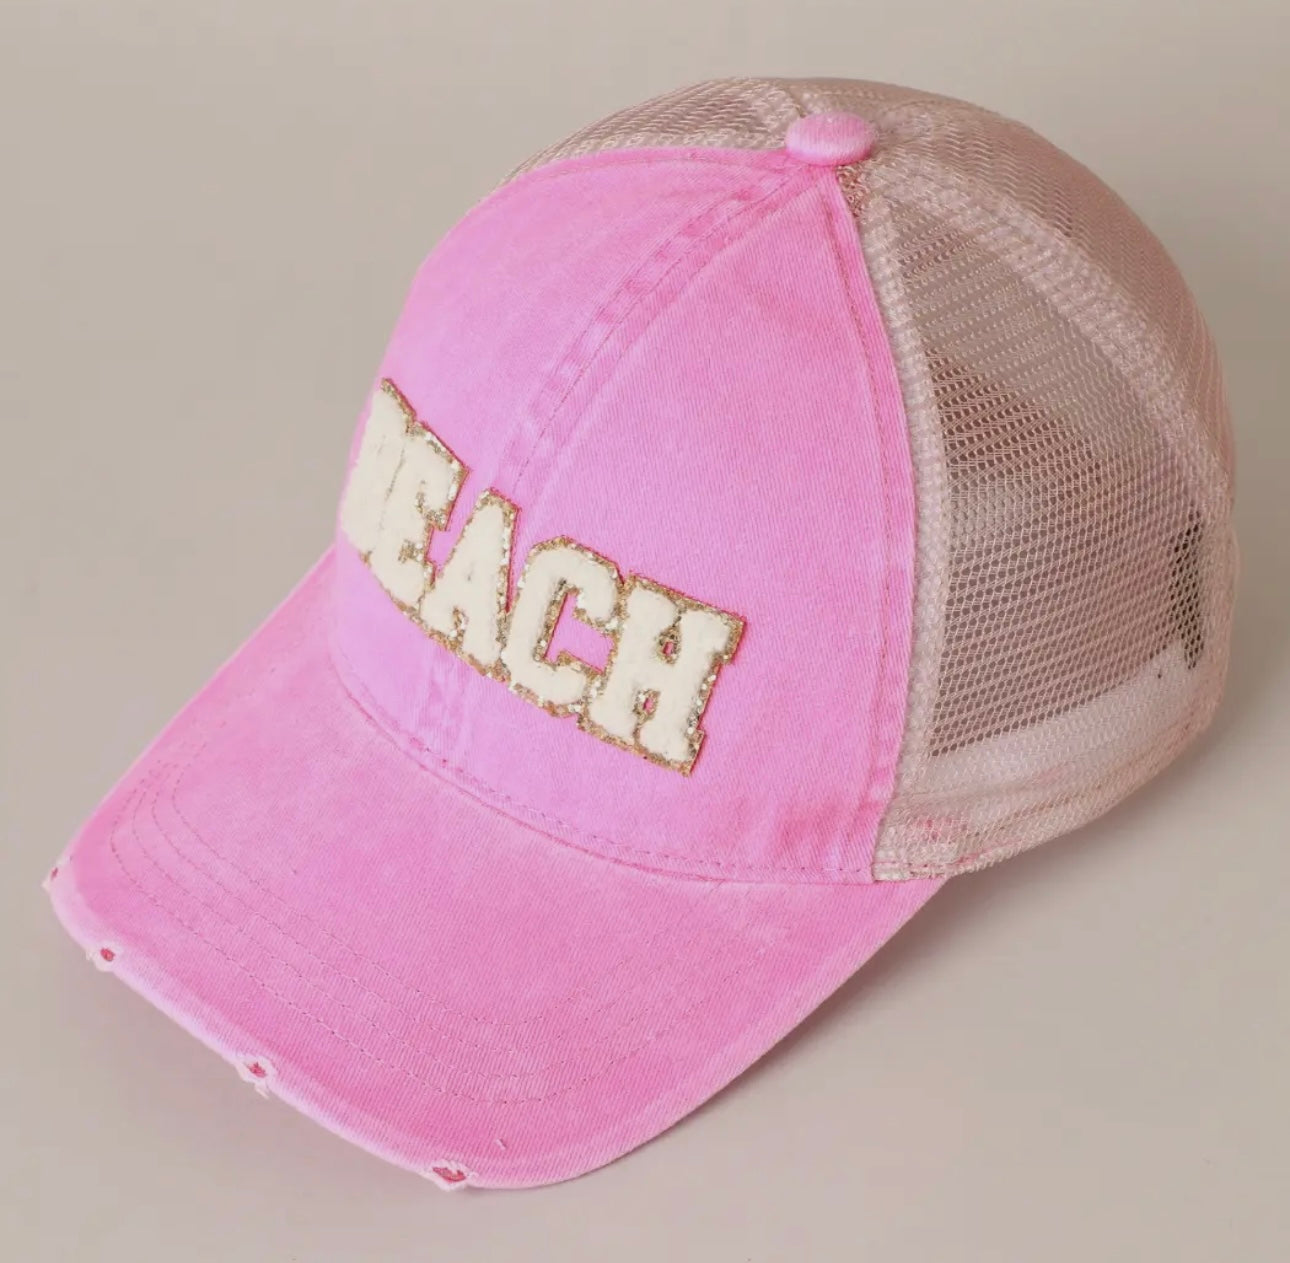 Beach Babe Trucker Hat